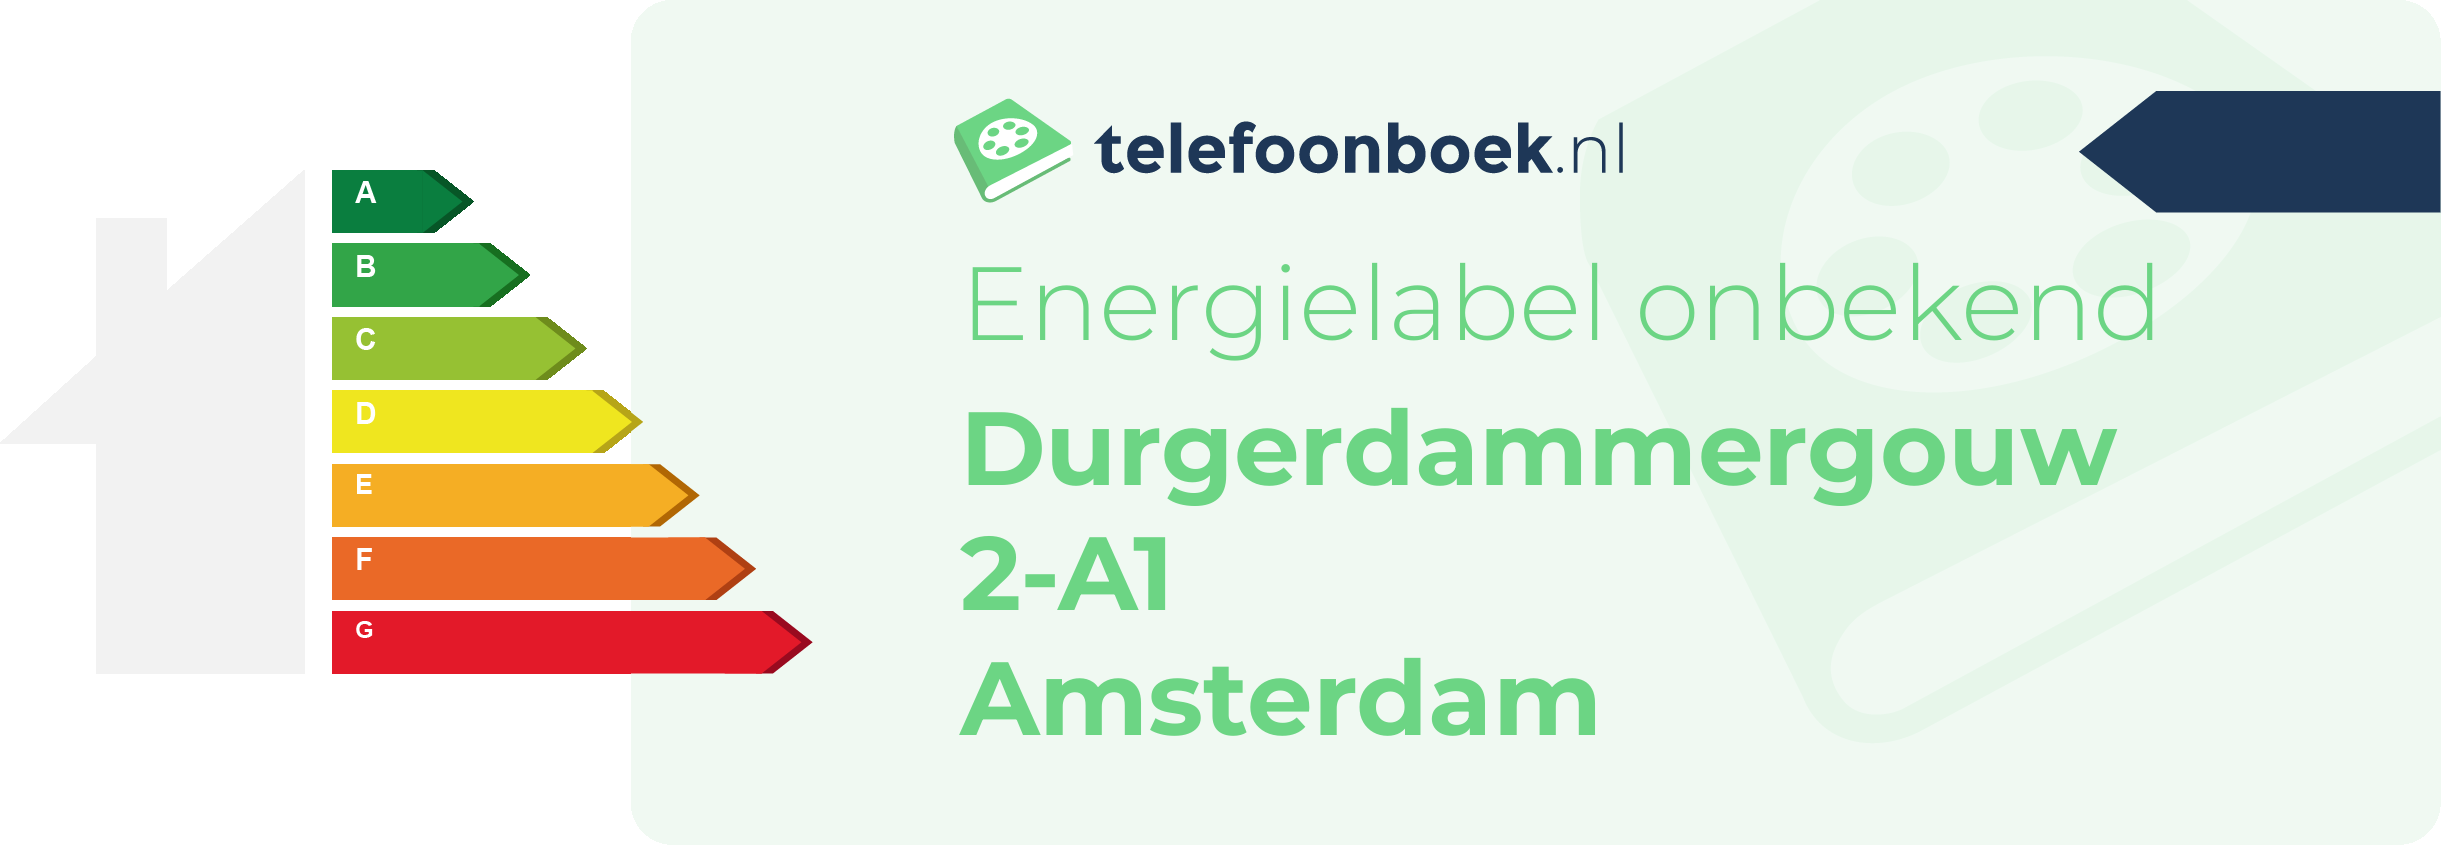 Energielabel Durgerdammergouw 2-A1 Amsterdam